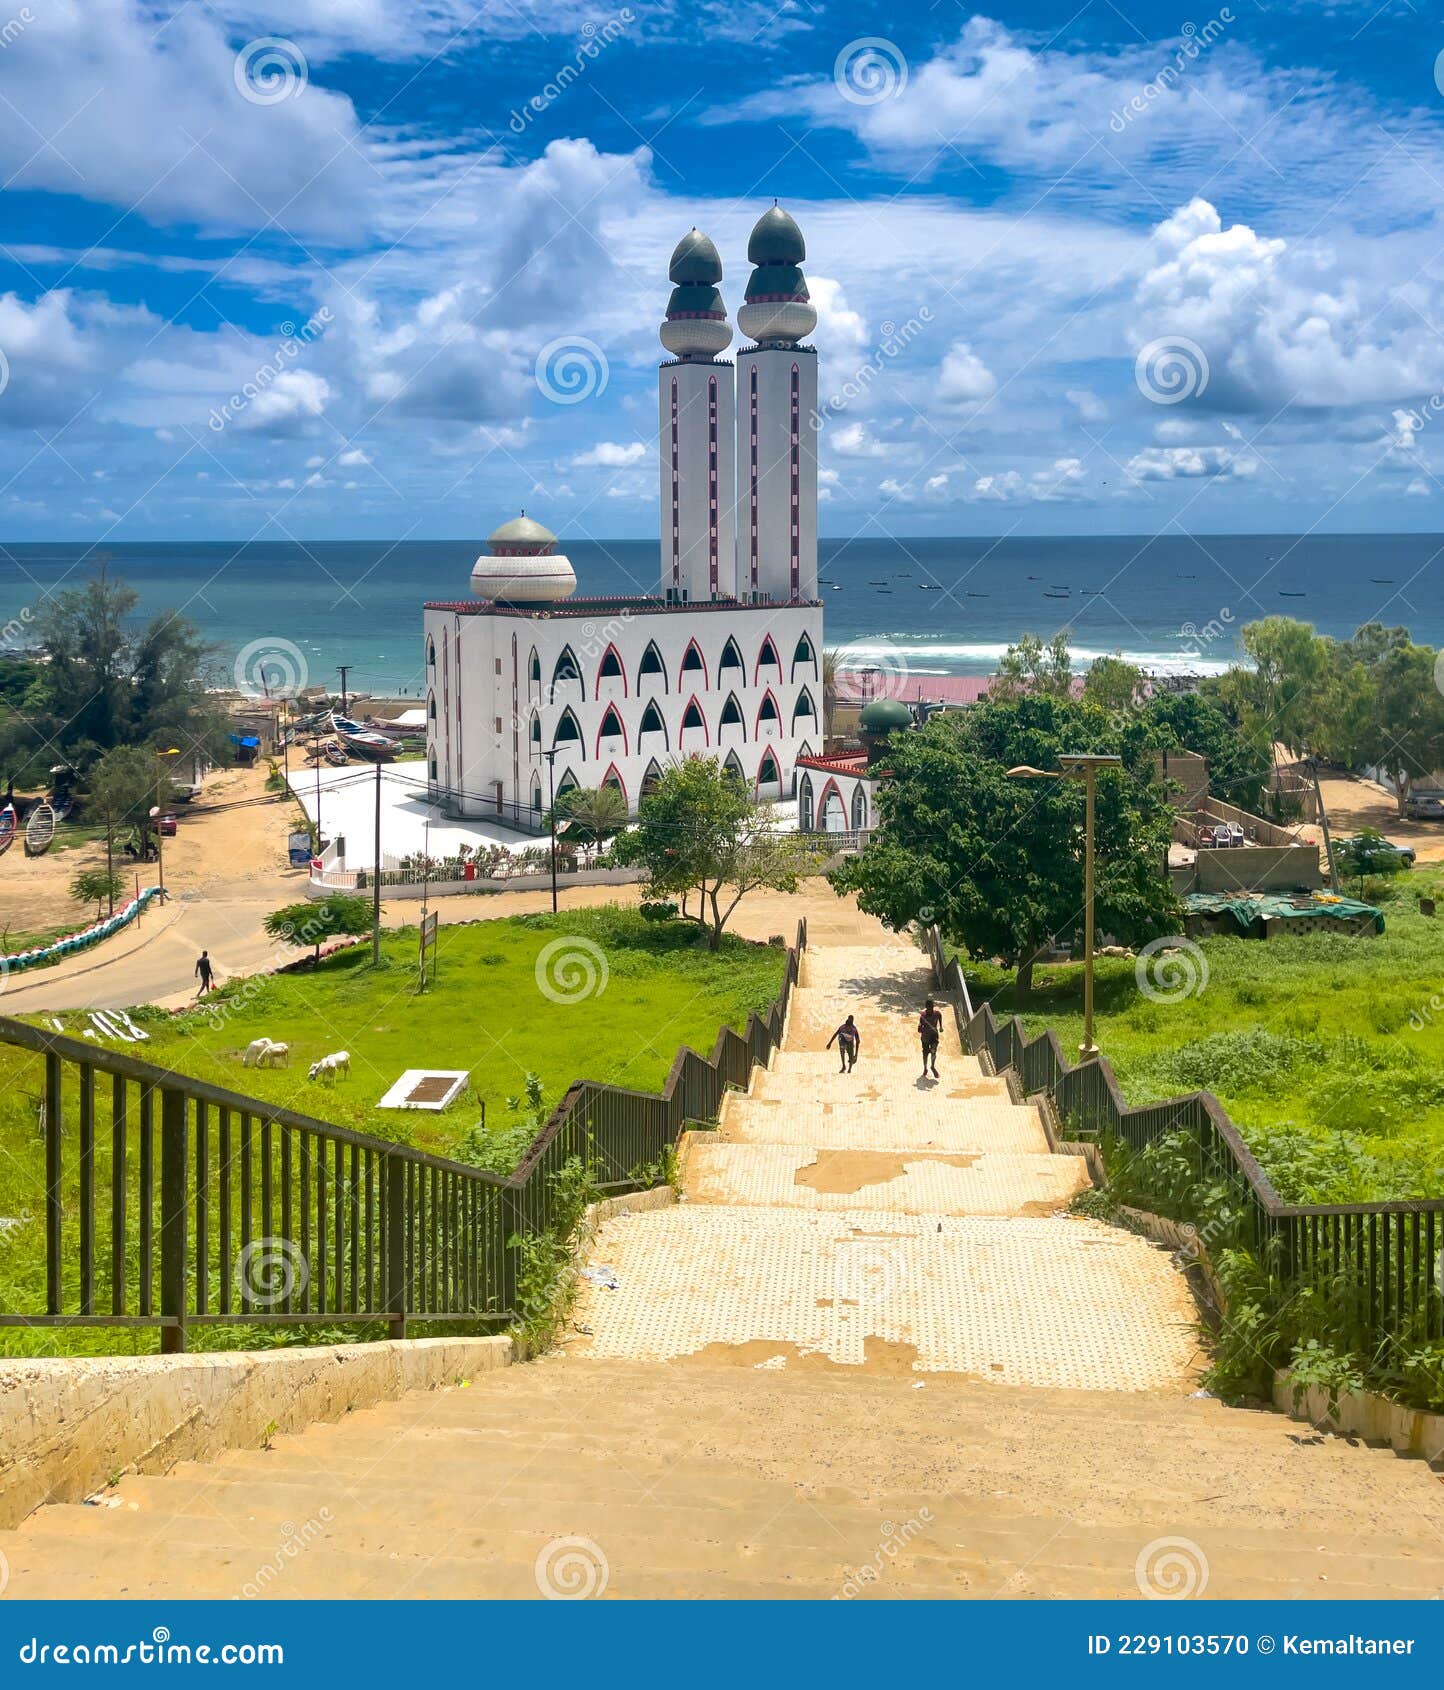 the divinity mosque, dakar, senegal, west africa